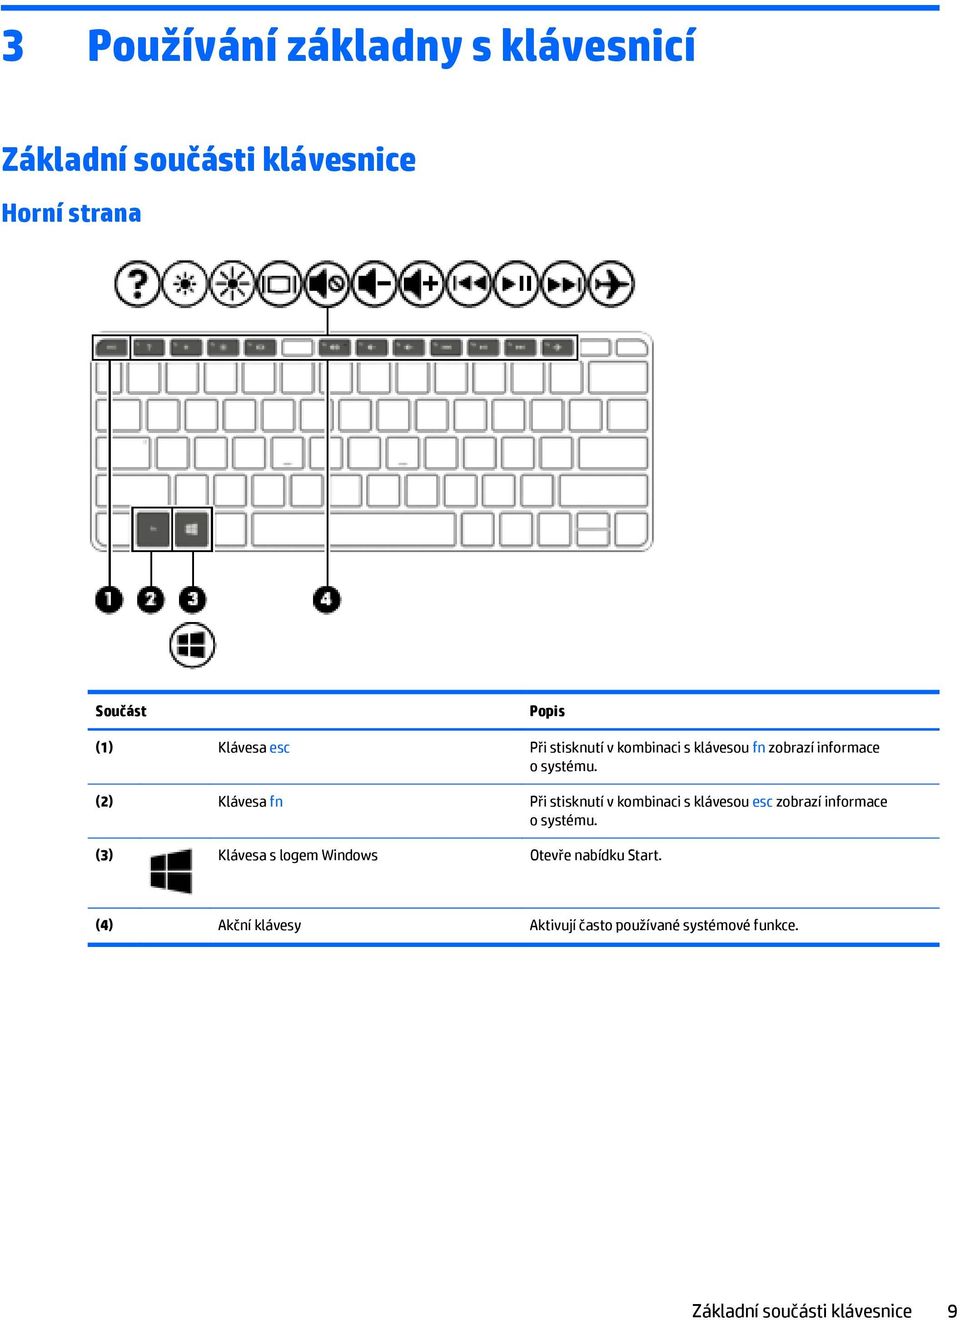 (2) Klávesa fn Při stisknutí v kombinaci s klávesou esc zobrazí informace o systému.